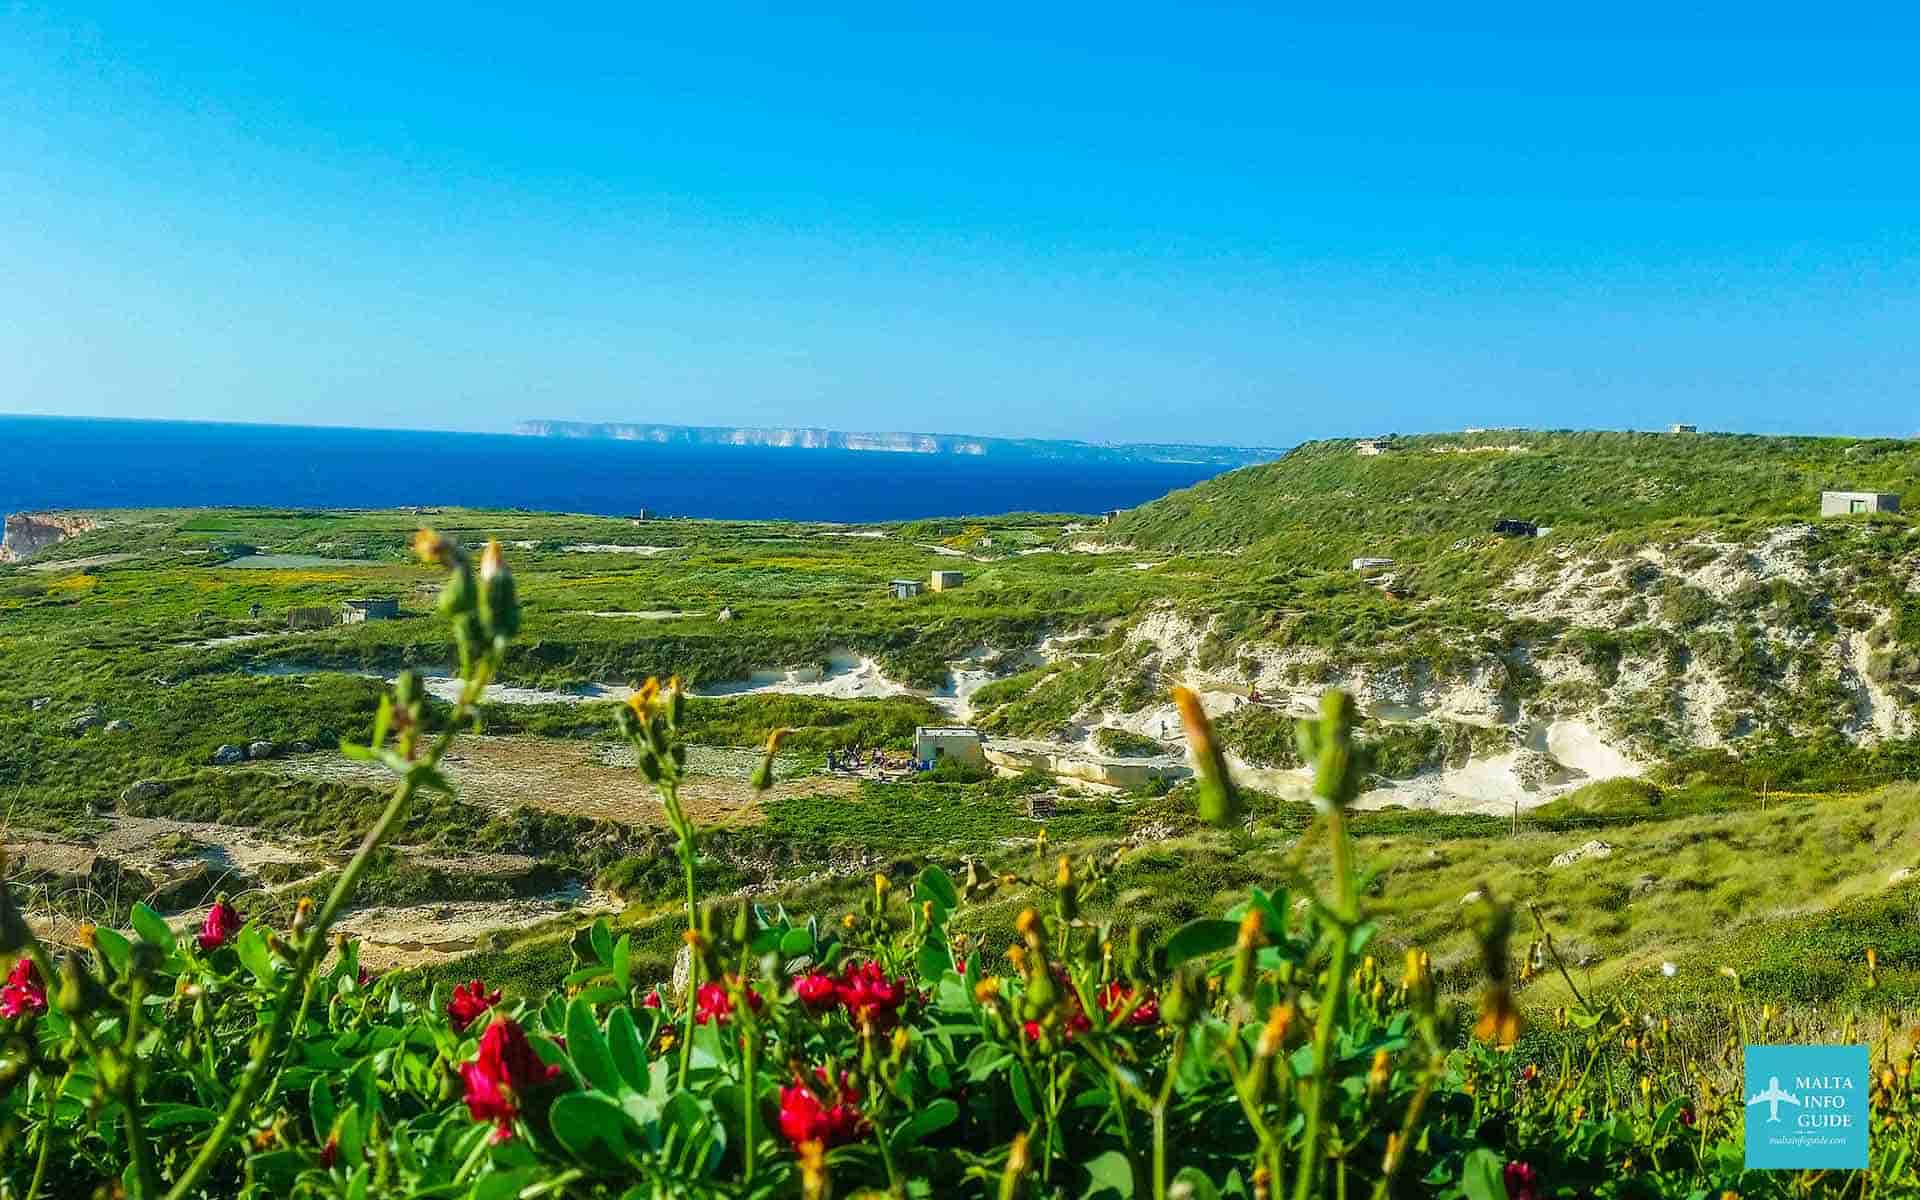 Beautiful green countryside overlooking the island of Gozo.